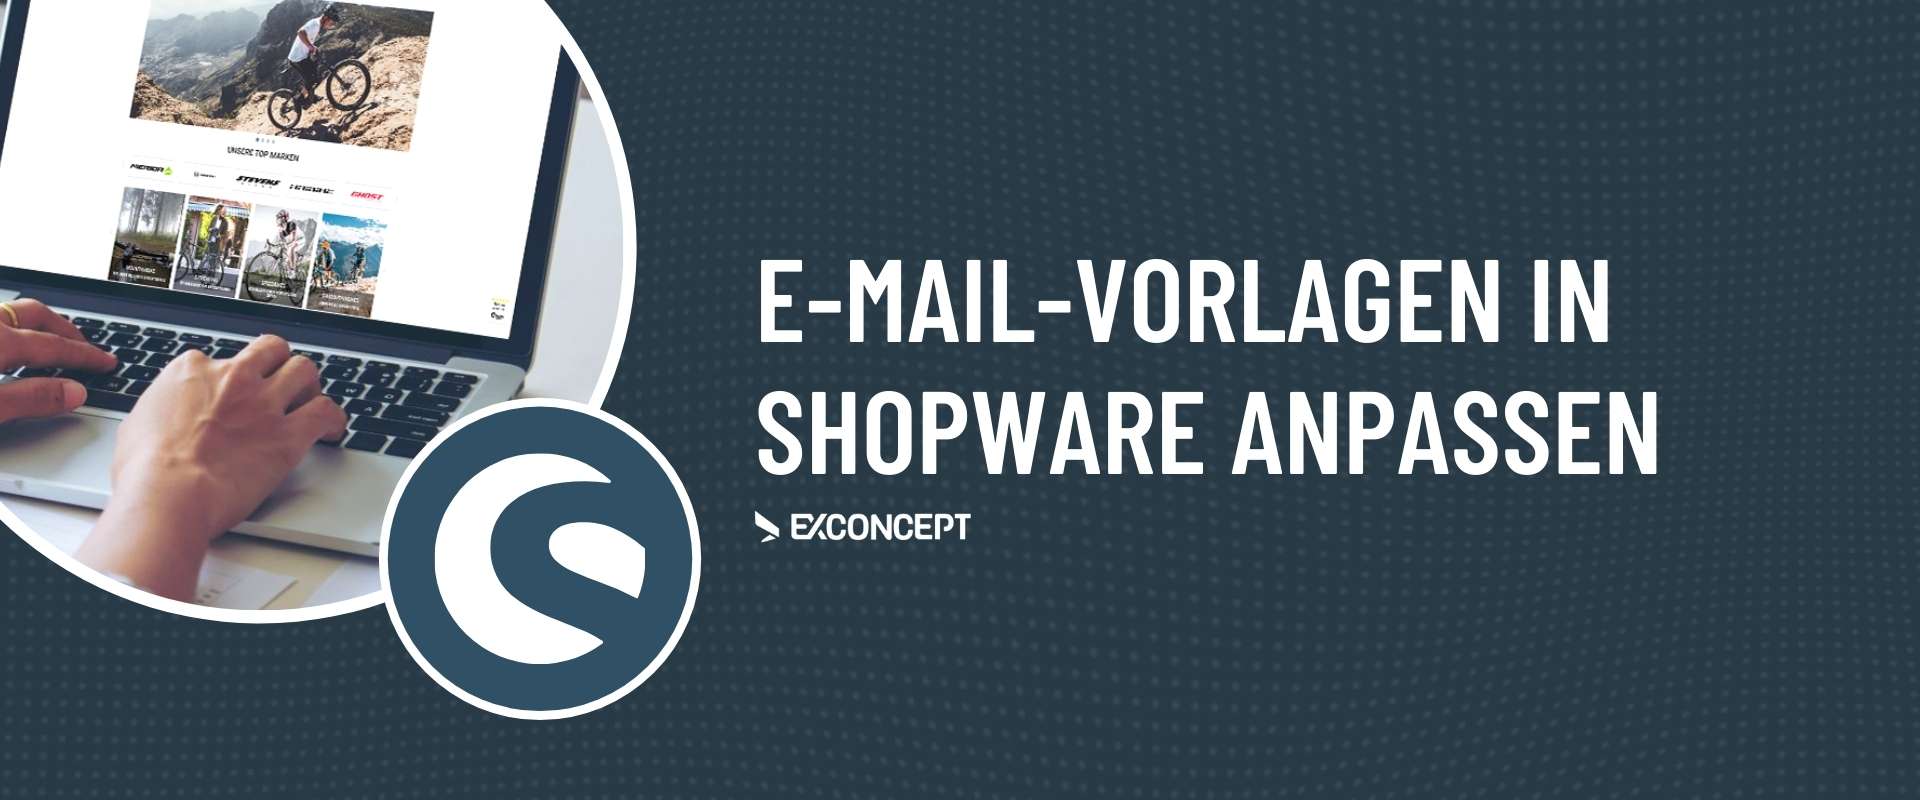 Shopware-Dienstleister E-Mail-Vorlagen anpassen